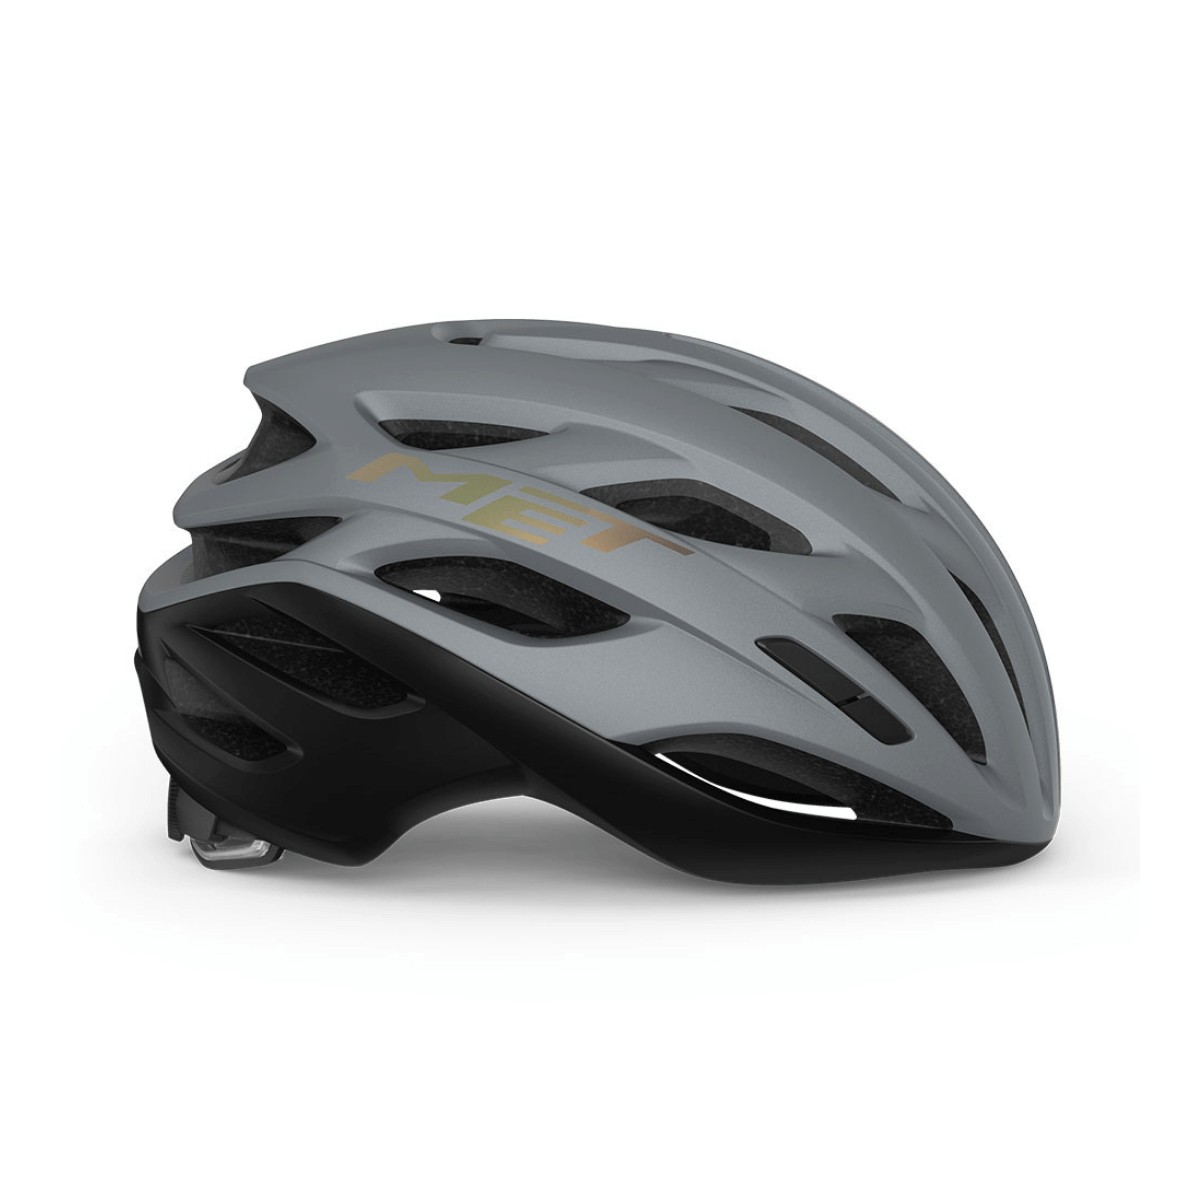 Met Estro Mips Helmet Gray Matte, Size M (56-58 cm)